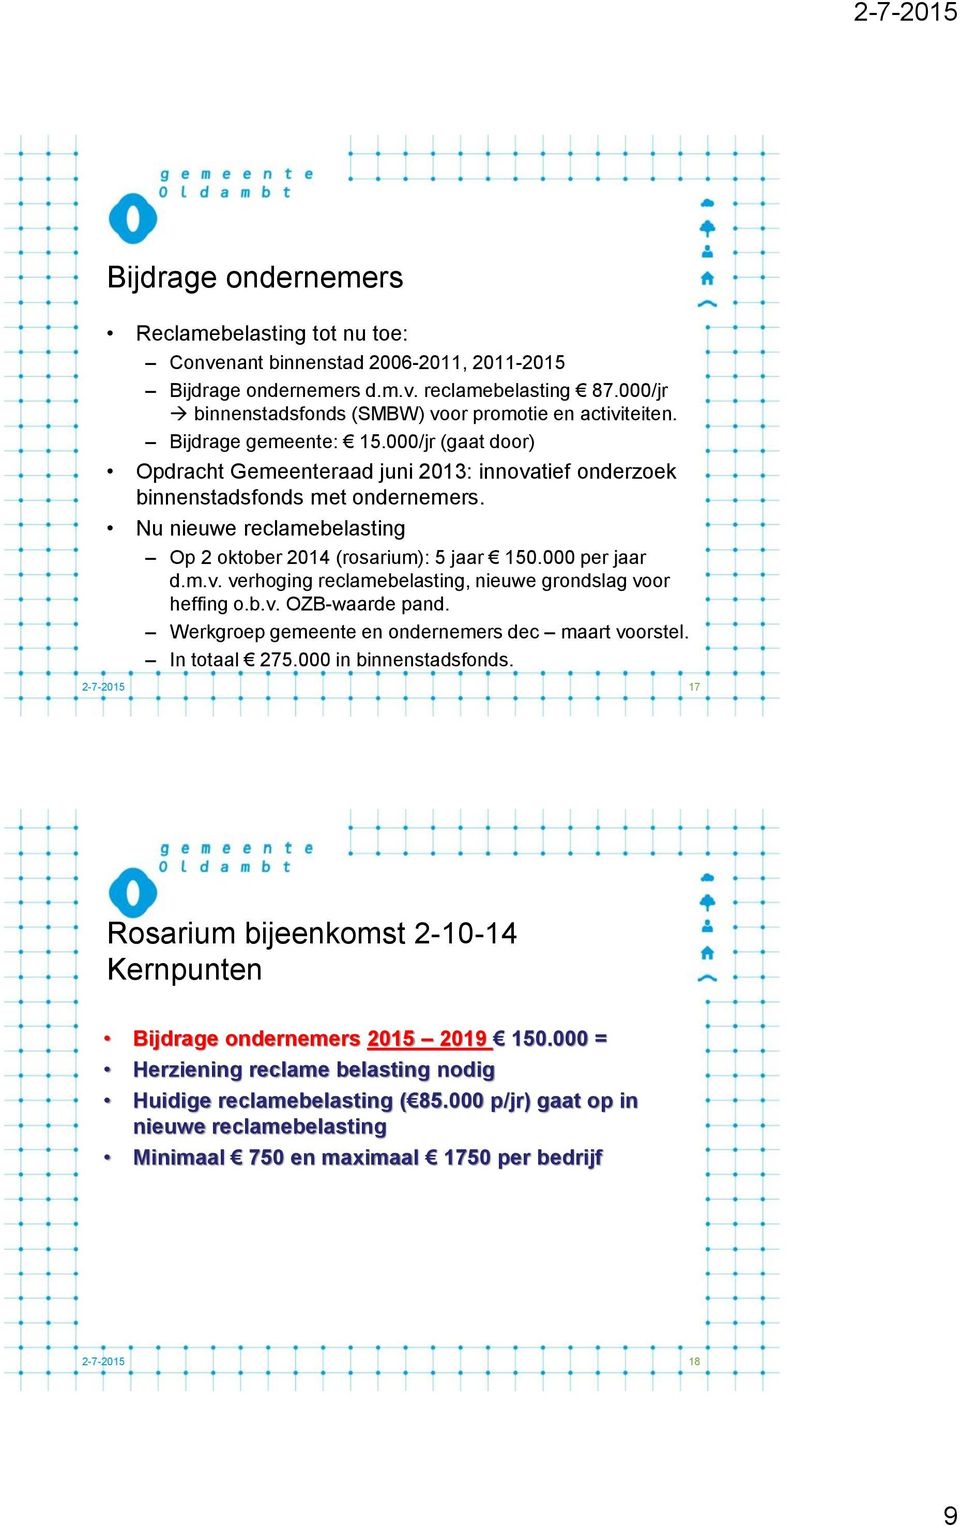 Nu nieuwe reclamebelasting Op 2 oktober 2014 (rosarium): 5 jaar 150.000 per jaar d.m.v. verhoging reclamebelasting, nieuwe grondslag voor heffing o.b.v. OZB-waarde pand.